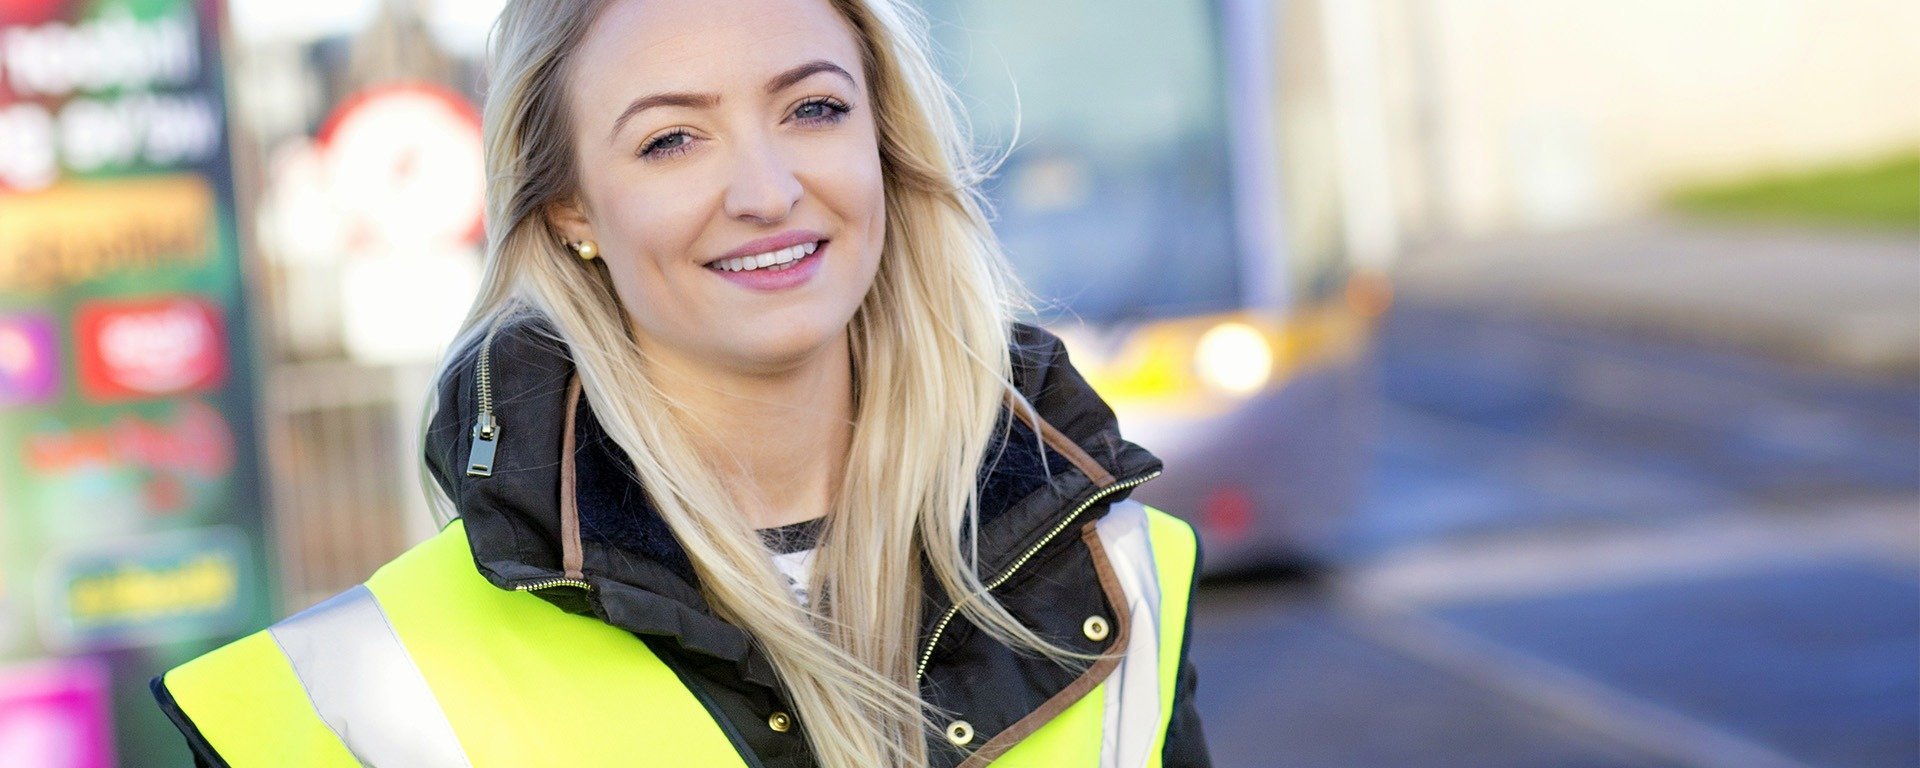 jeune femme blonde souriante avec un gilet de sécurité jaune fluorescent posant devant un bus, l'arrière-plan est flou